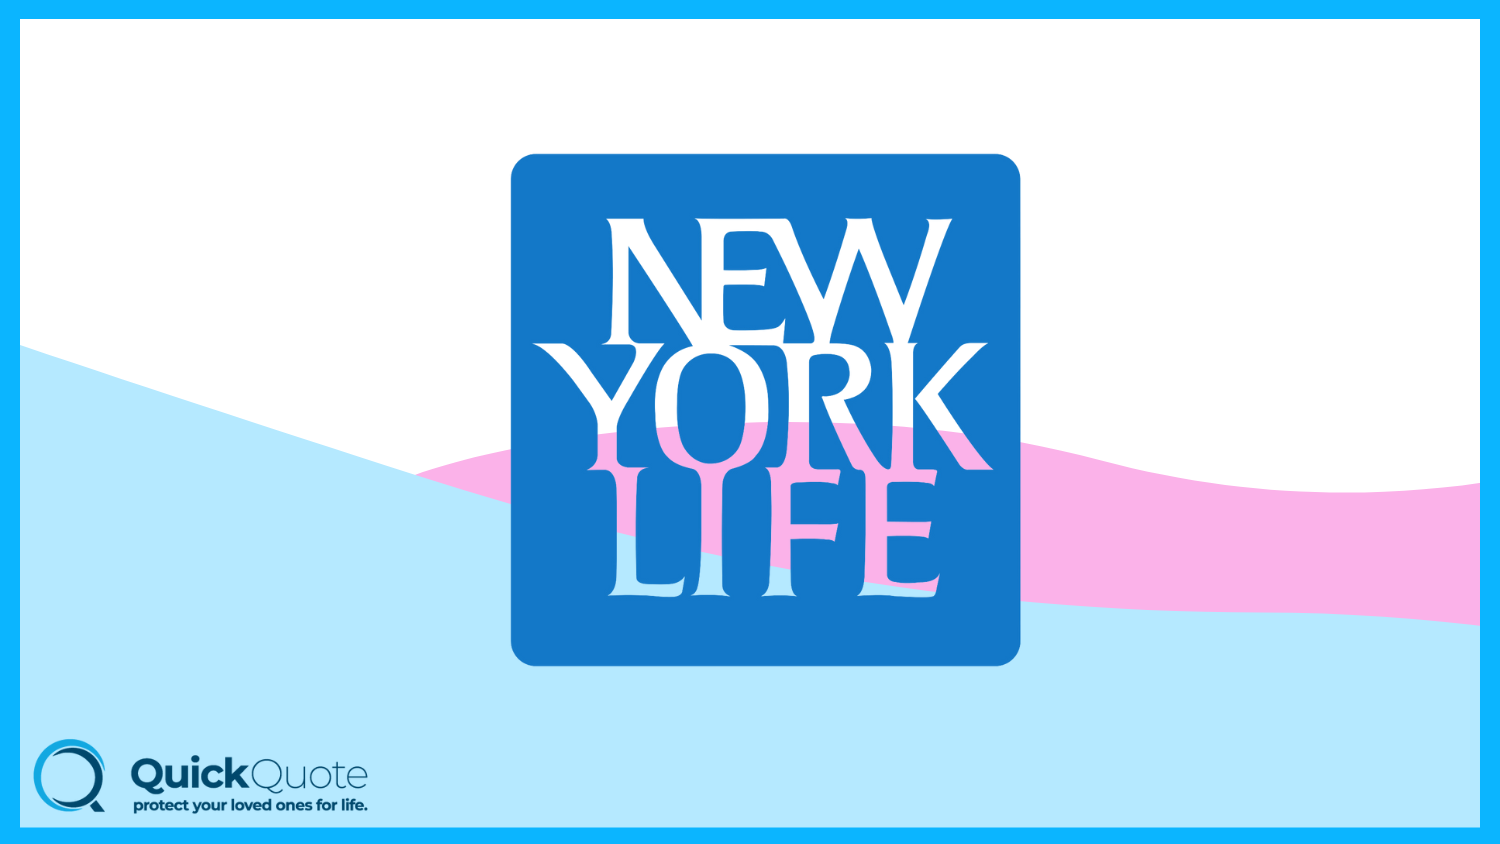 Best Life Insurance for Children: New York Life